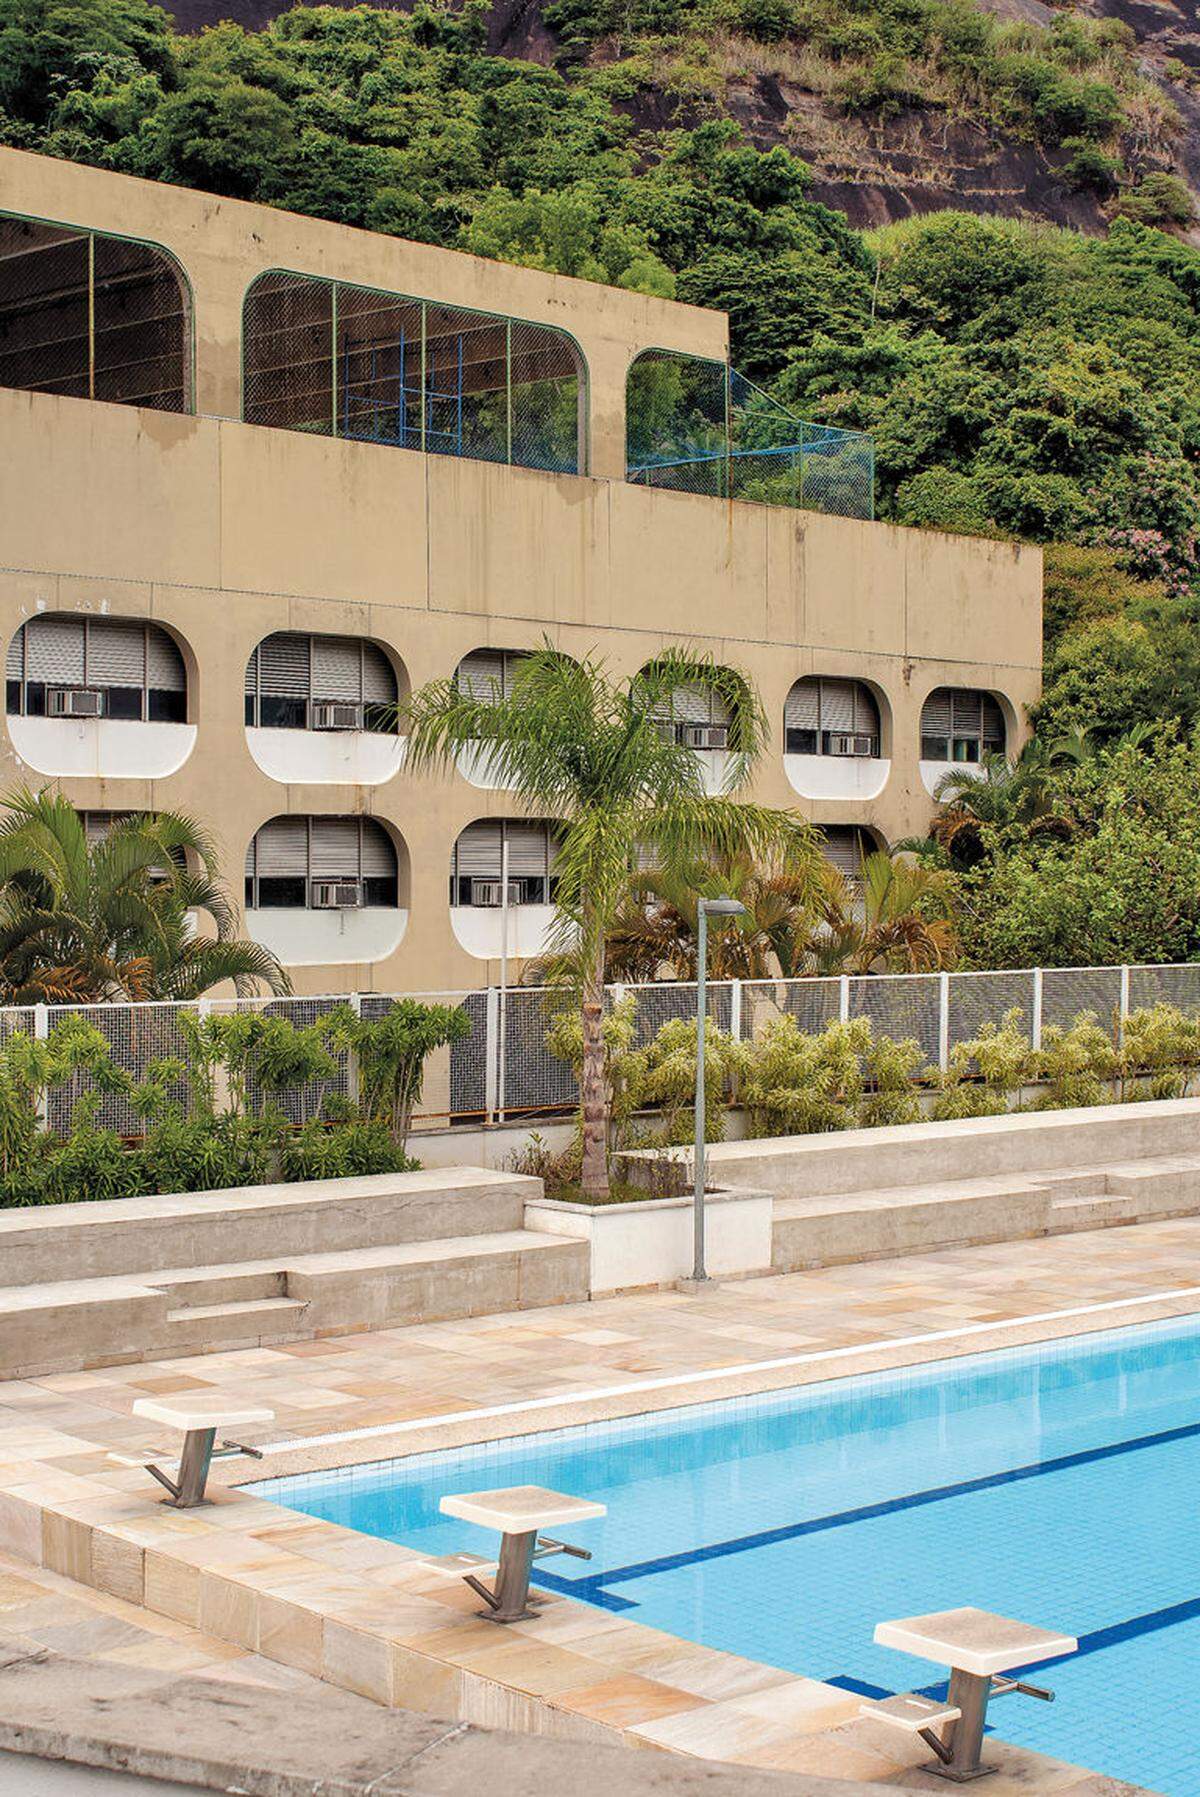 Über 500 Schulen entstammen dem thematisierten brasilianischen Bauprojekt – initiiert u. a. von Architekt Niemeyer; man baute mit standardisierten Betonmodulen.